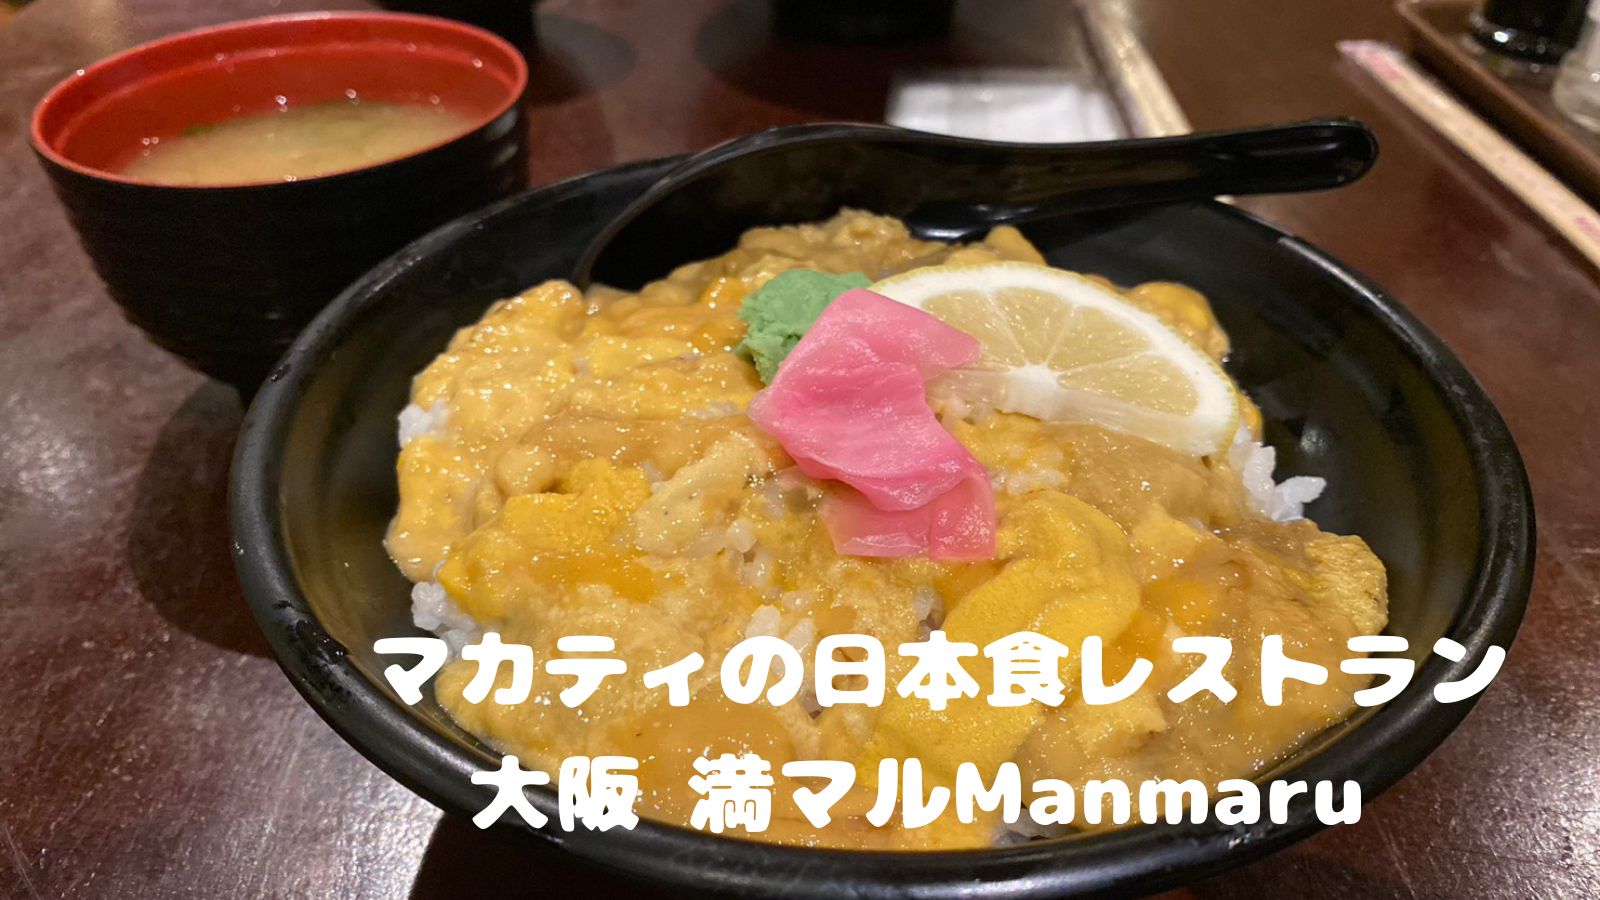 マカティの日本食レストラン 大阪 満マルManmaru